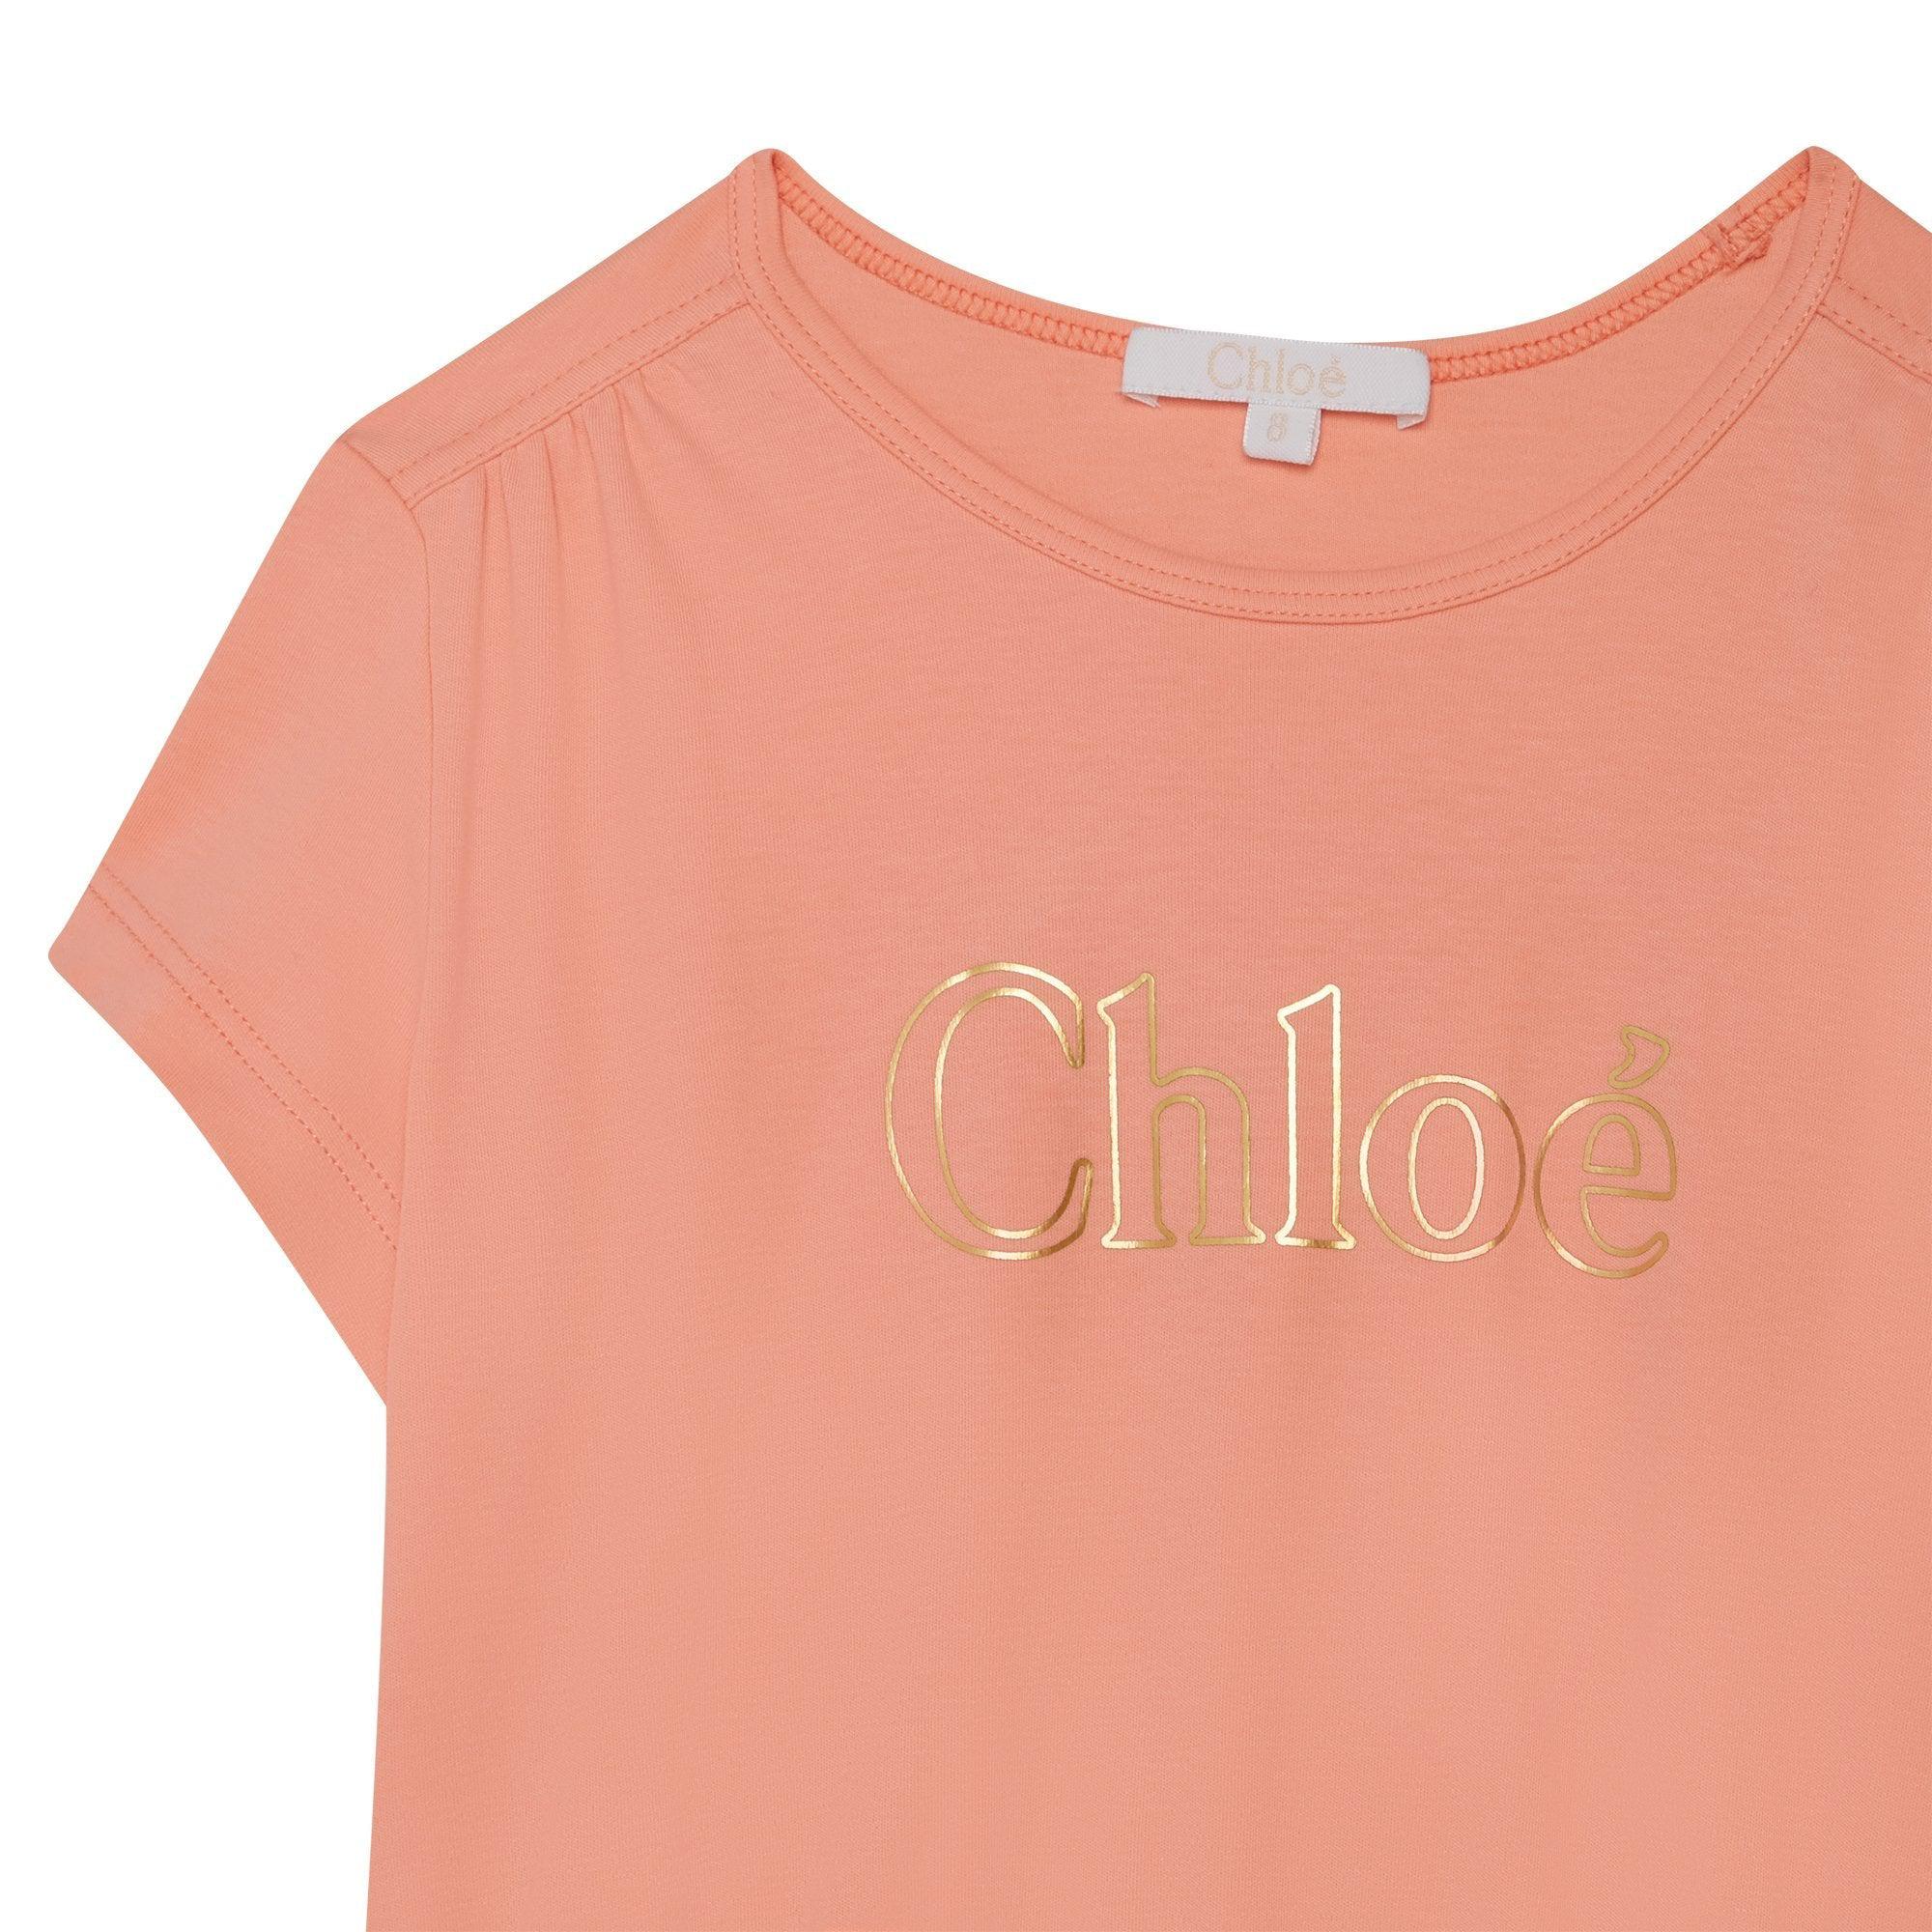 Chloe Girls Light Pink Dress+Belt